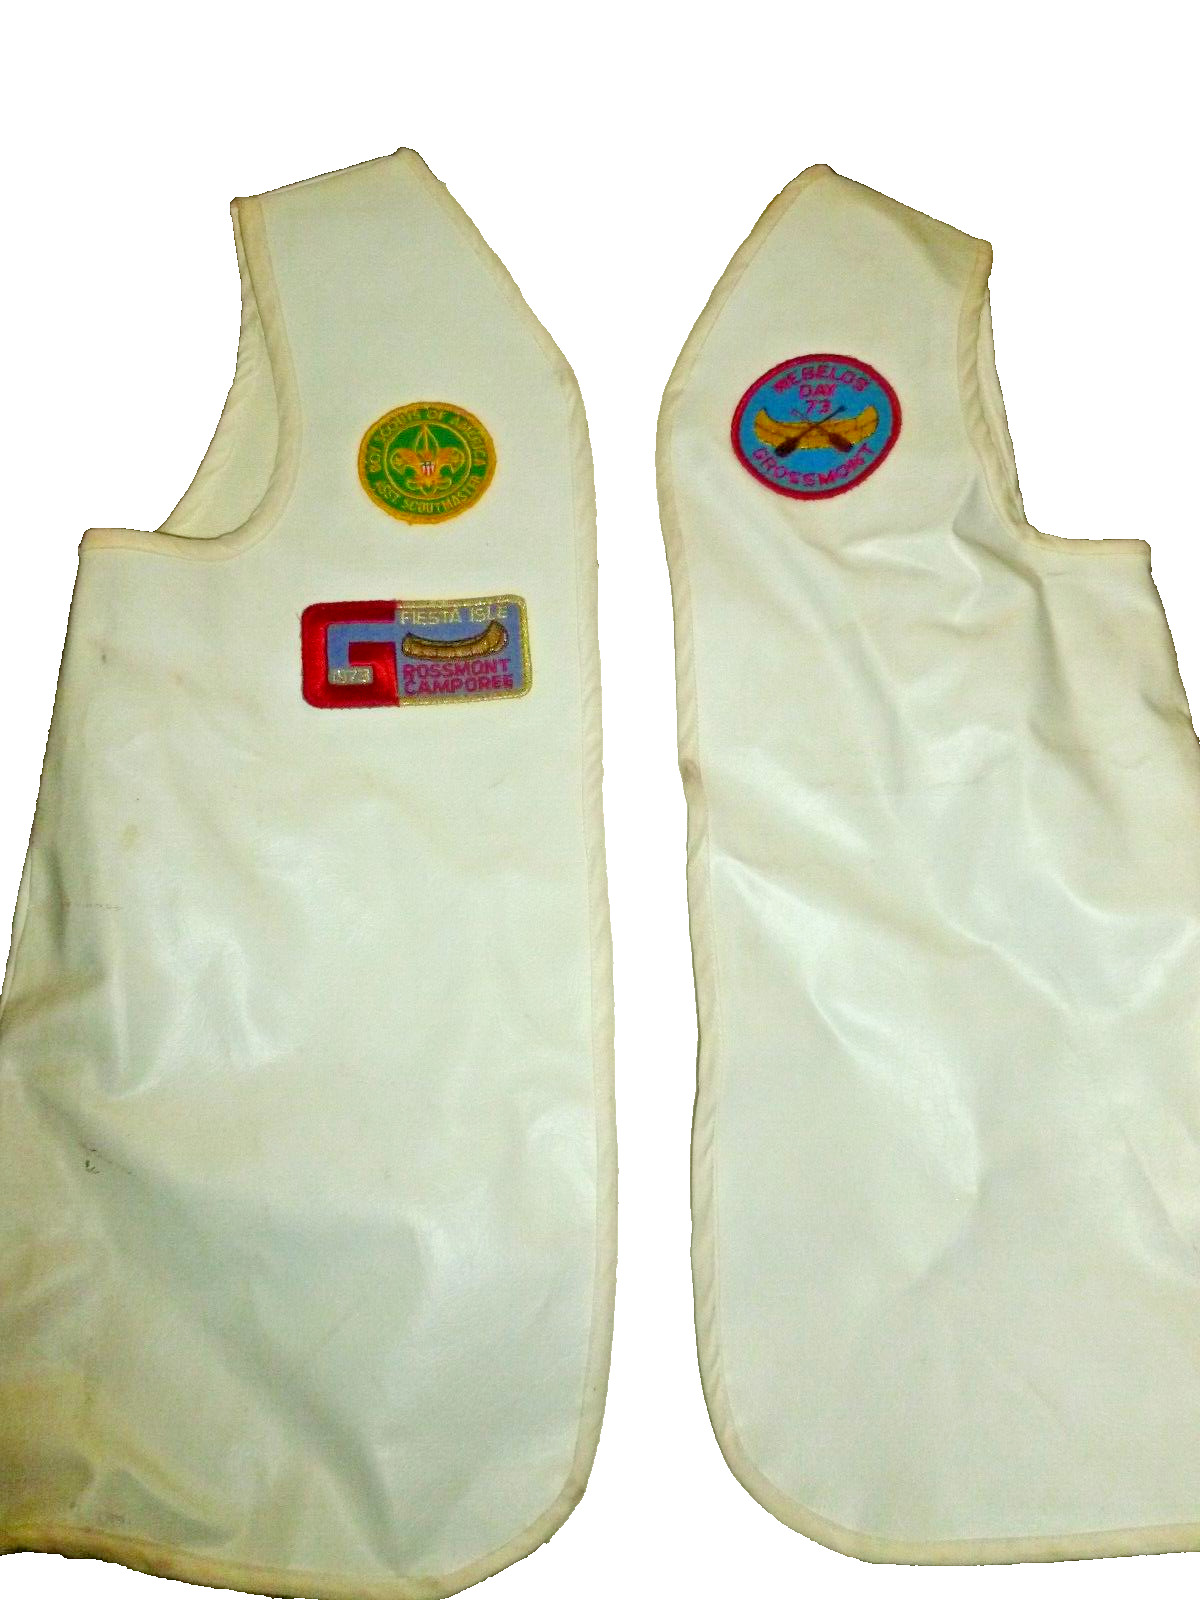 Boy Scouts Webelos  Vest Vinyl Adult sz M Medium 1970s 7 RARE PATCHES